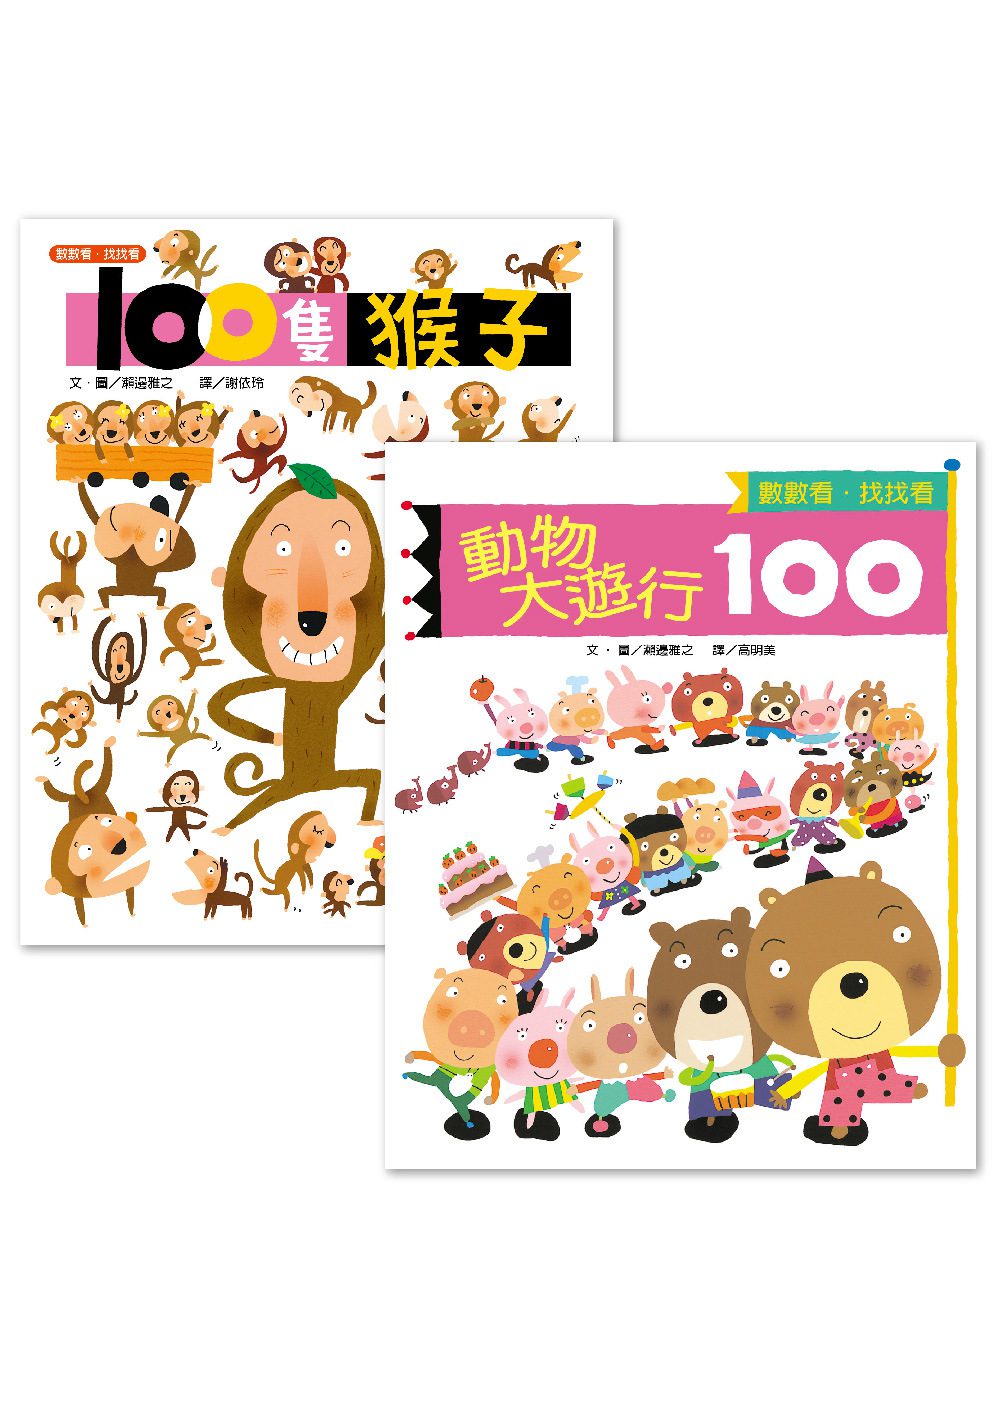 《100隻猴子》+《動物大遊行100》套書